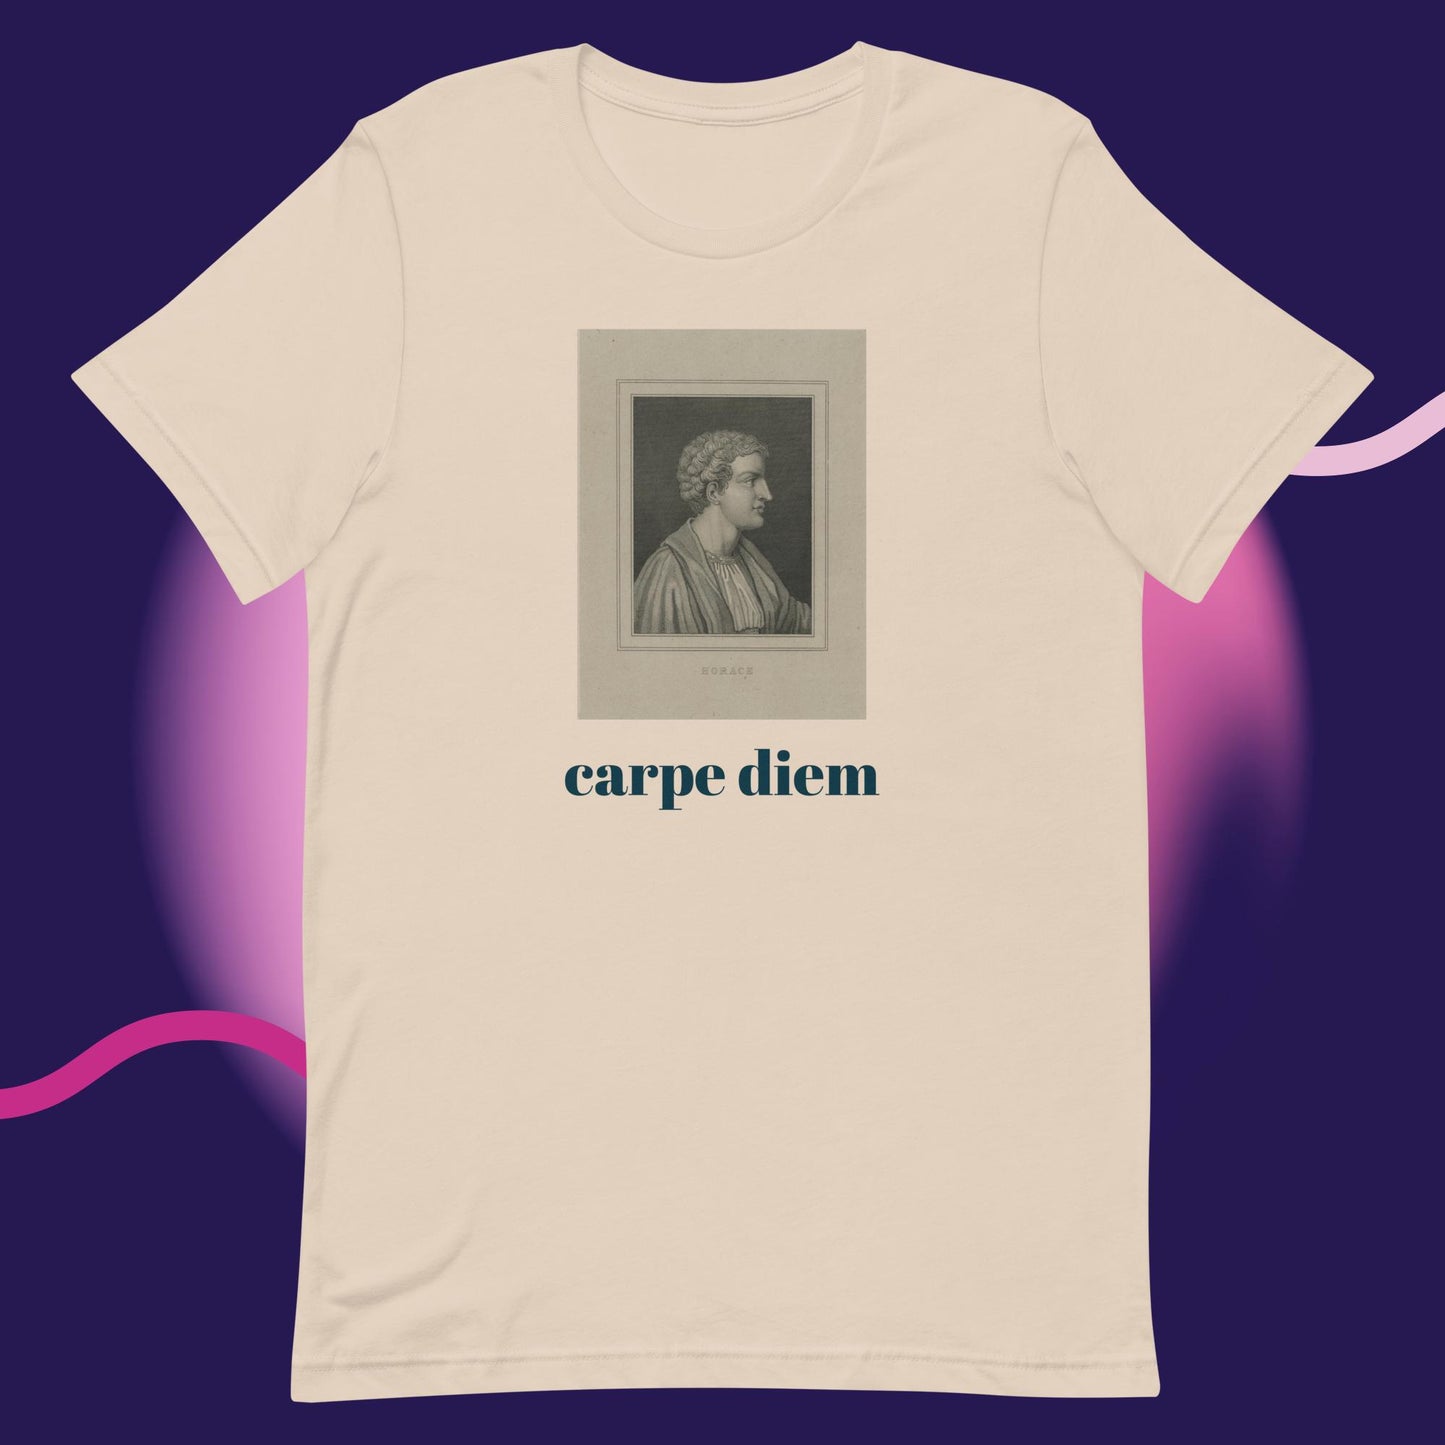 Horace "carpe diem" unisex t-shirt